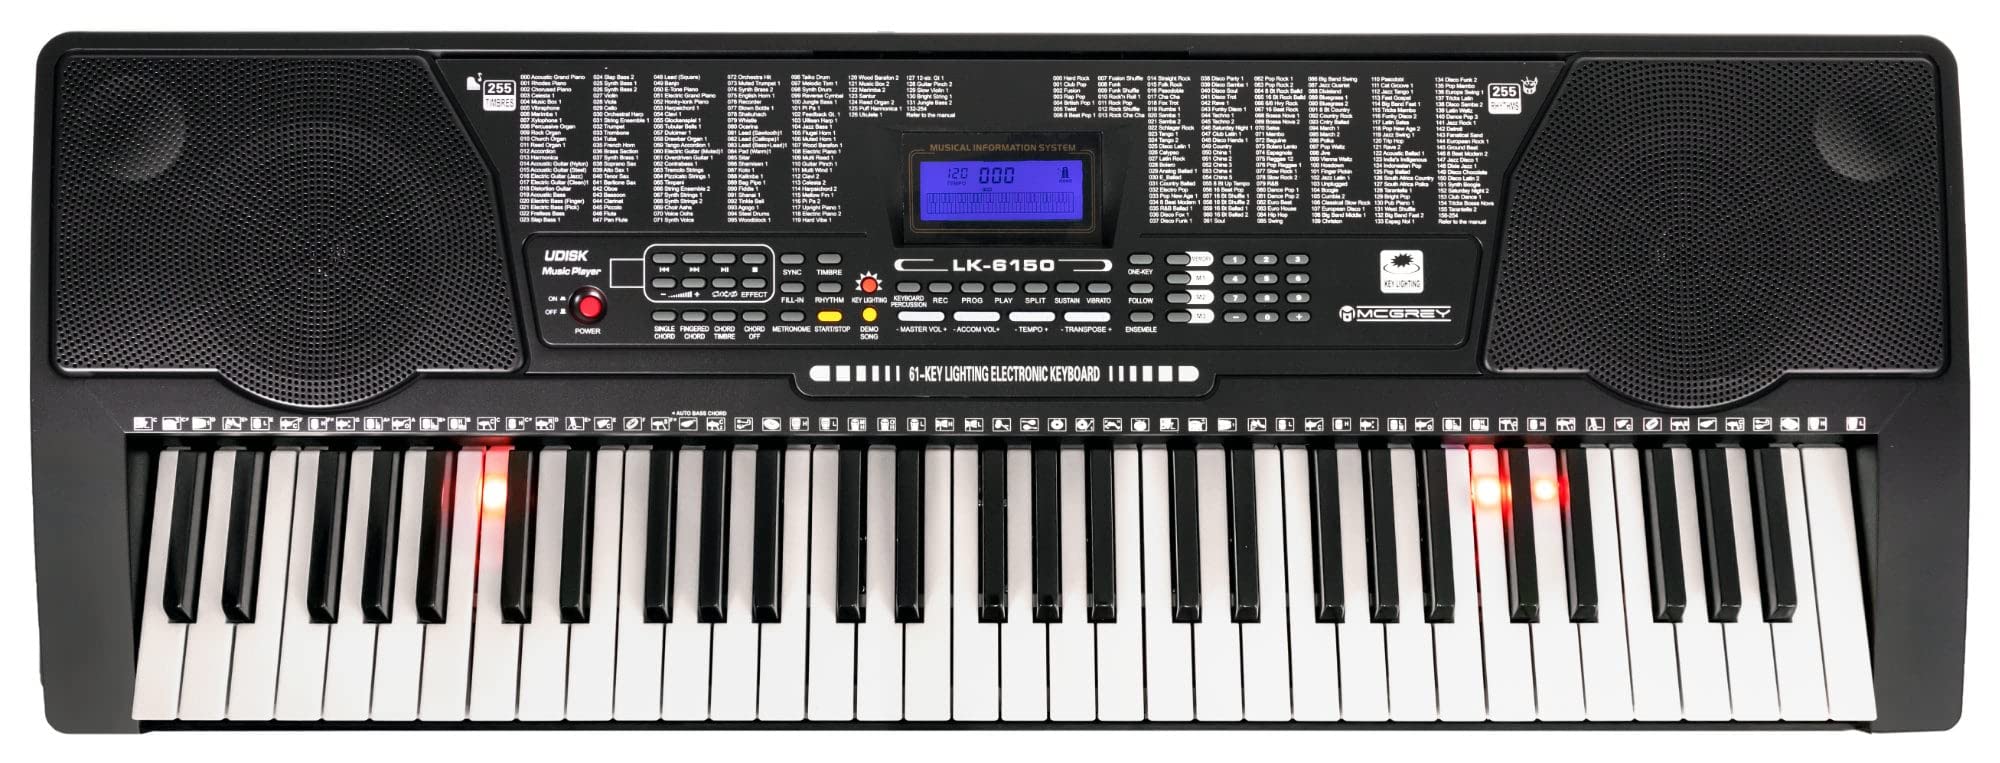 McGrey LK-6150 61 Tasten Keyboard Set - Einsteiger-Keyboard mit 61 Leuchttasten - 255 Sounds und 255 Rhythmen - integrierter MP3-Player - inkl. Ständer und Hocker - Schwarz